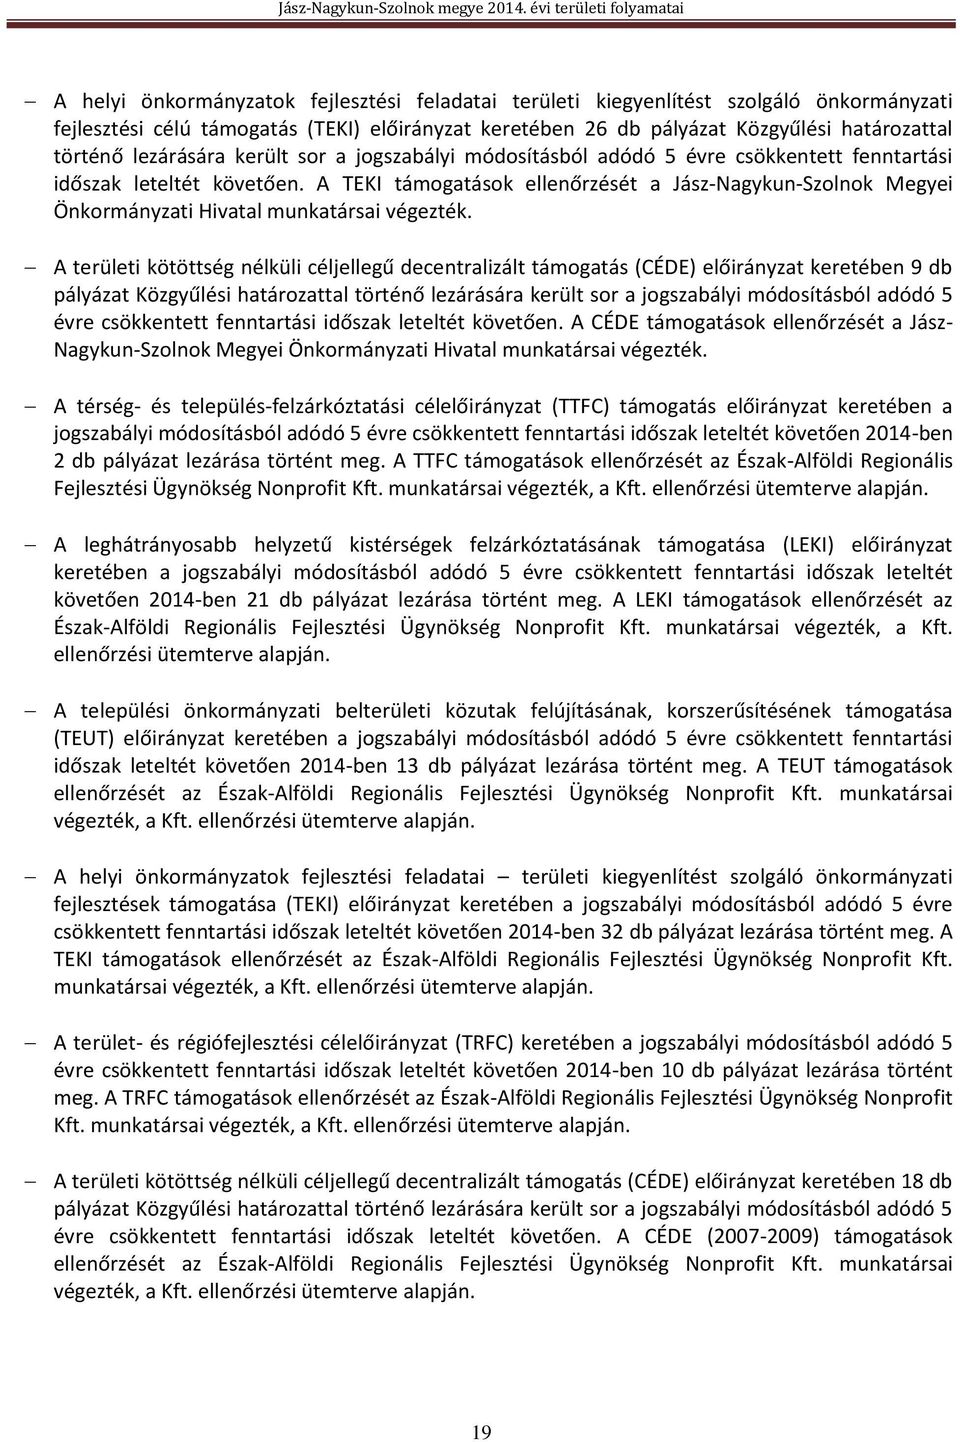 A TEKI támogatások ellenőrzését a Jász-Nagykun-Szolnok Megyei Önkormányzati Hivatal munkatársai végezték.